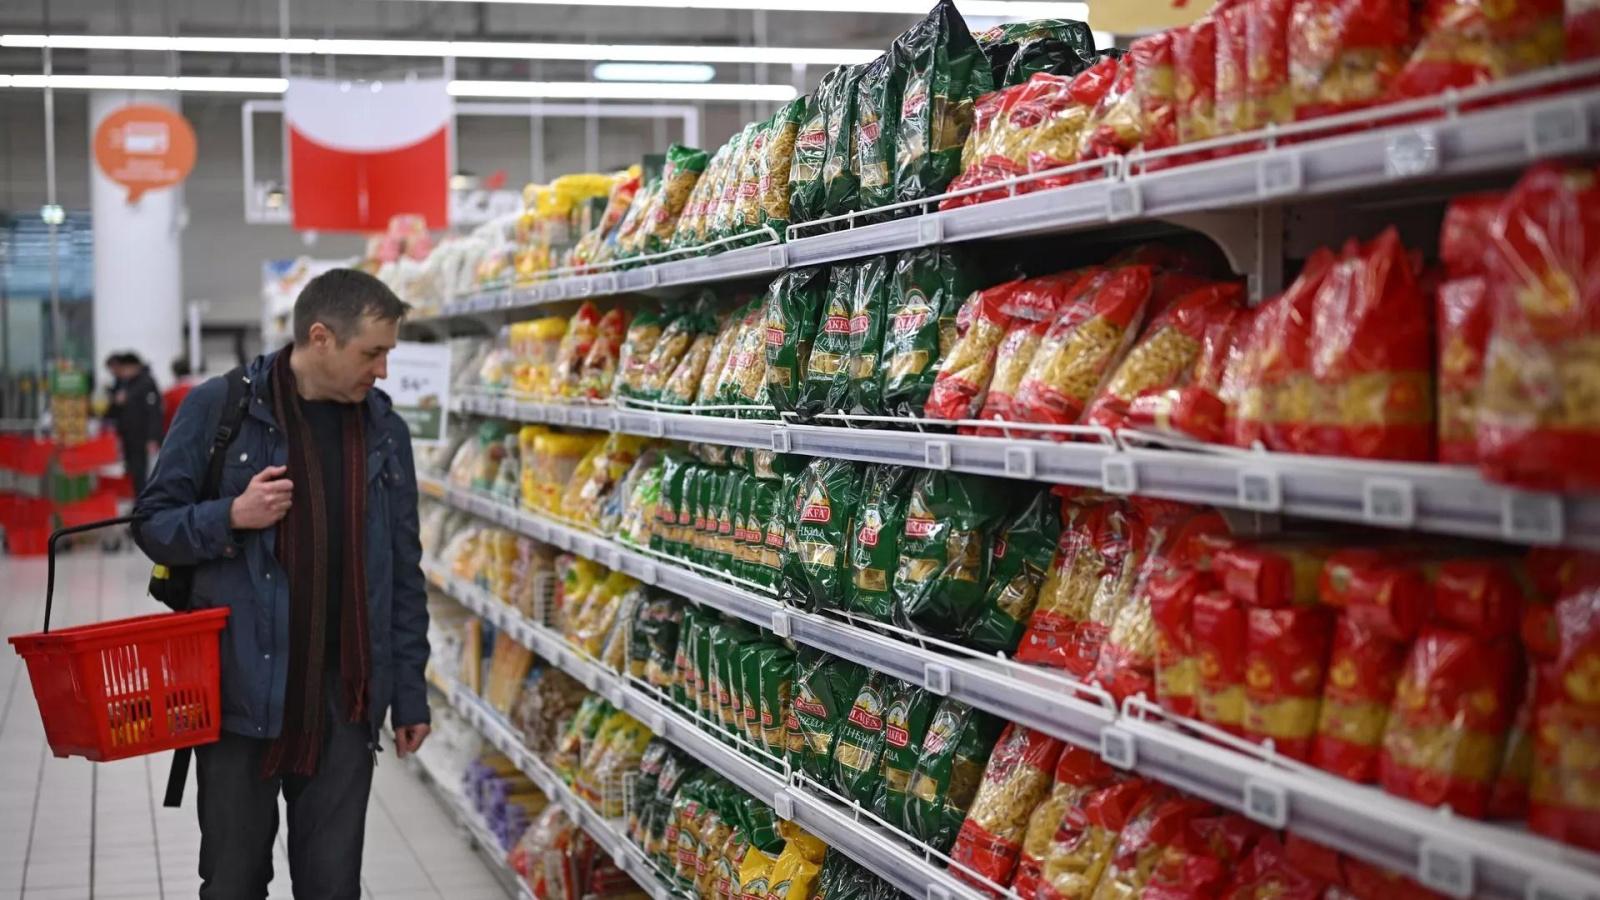 В Беларуси продолжает снижаться уровень инфляции